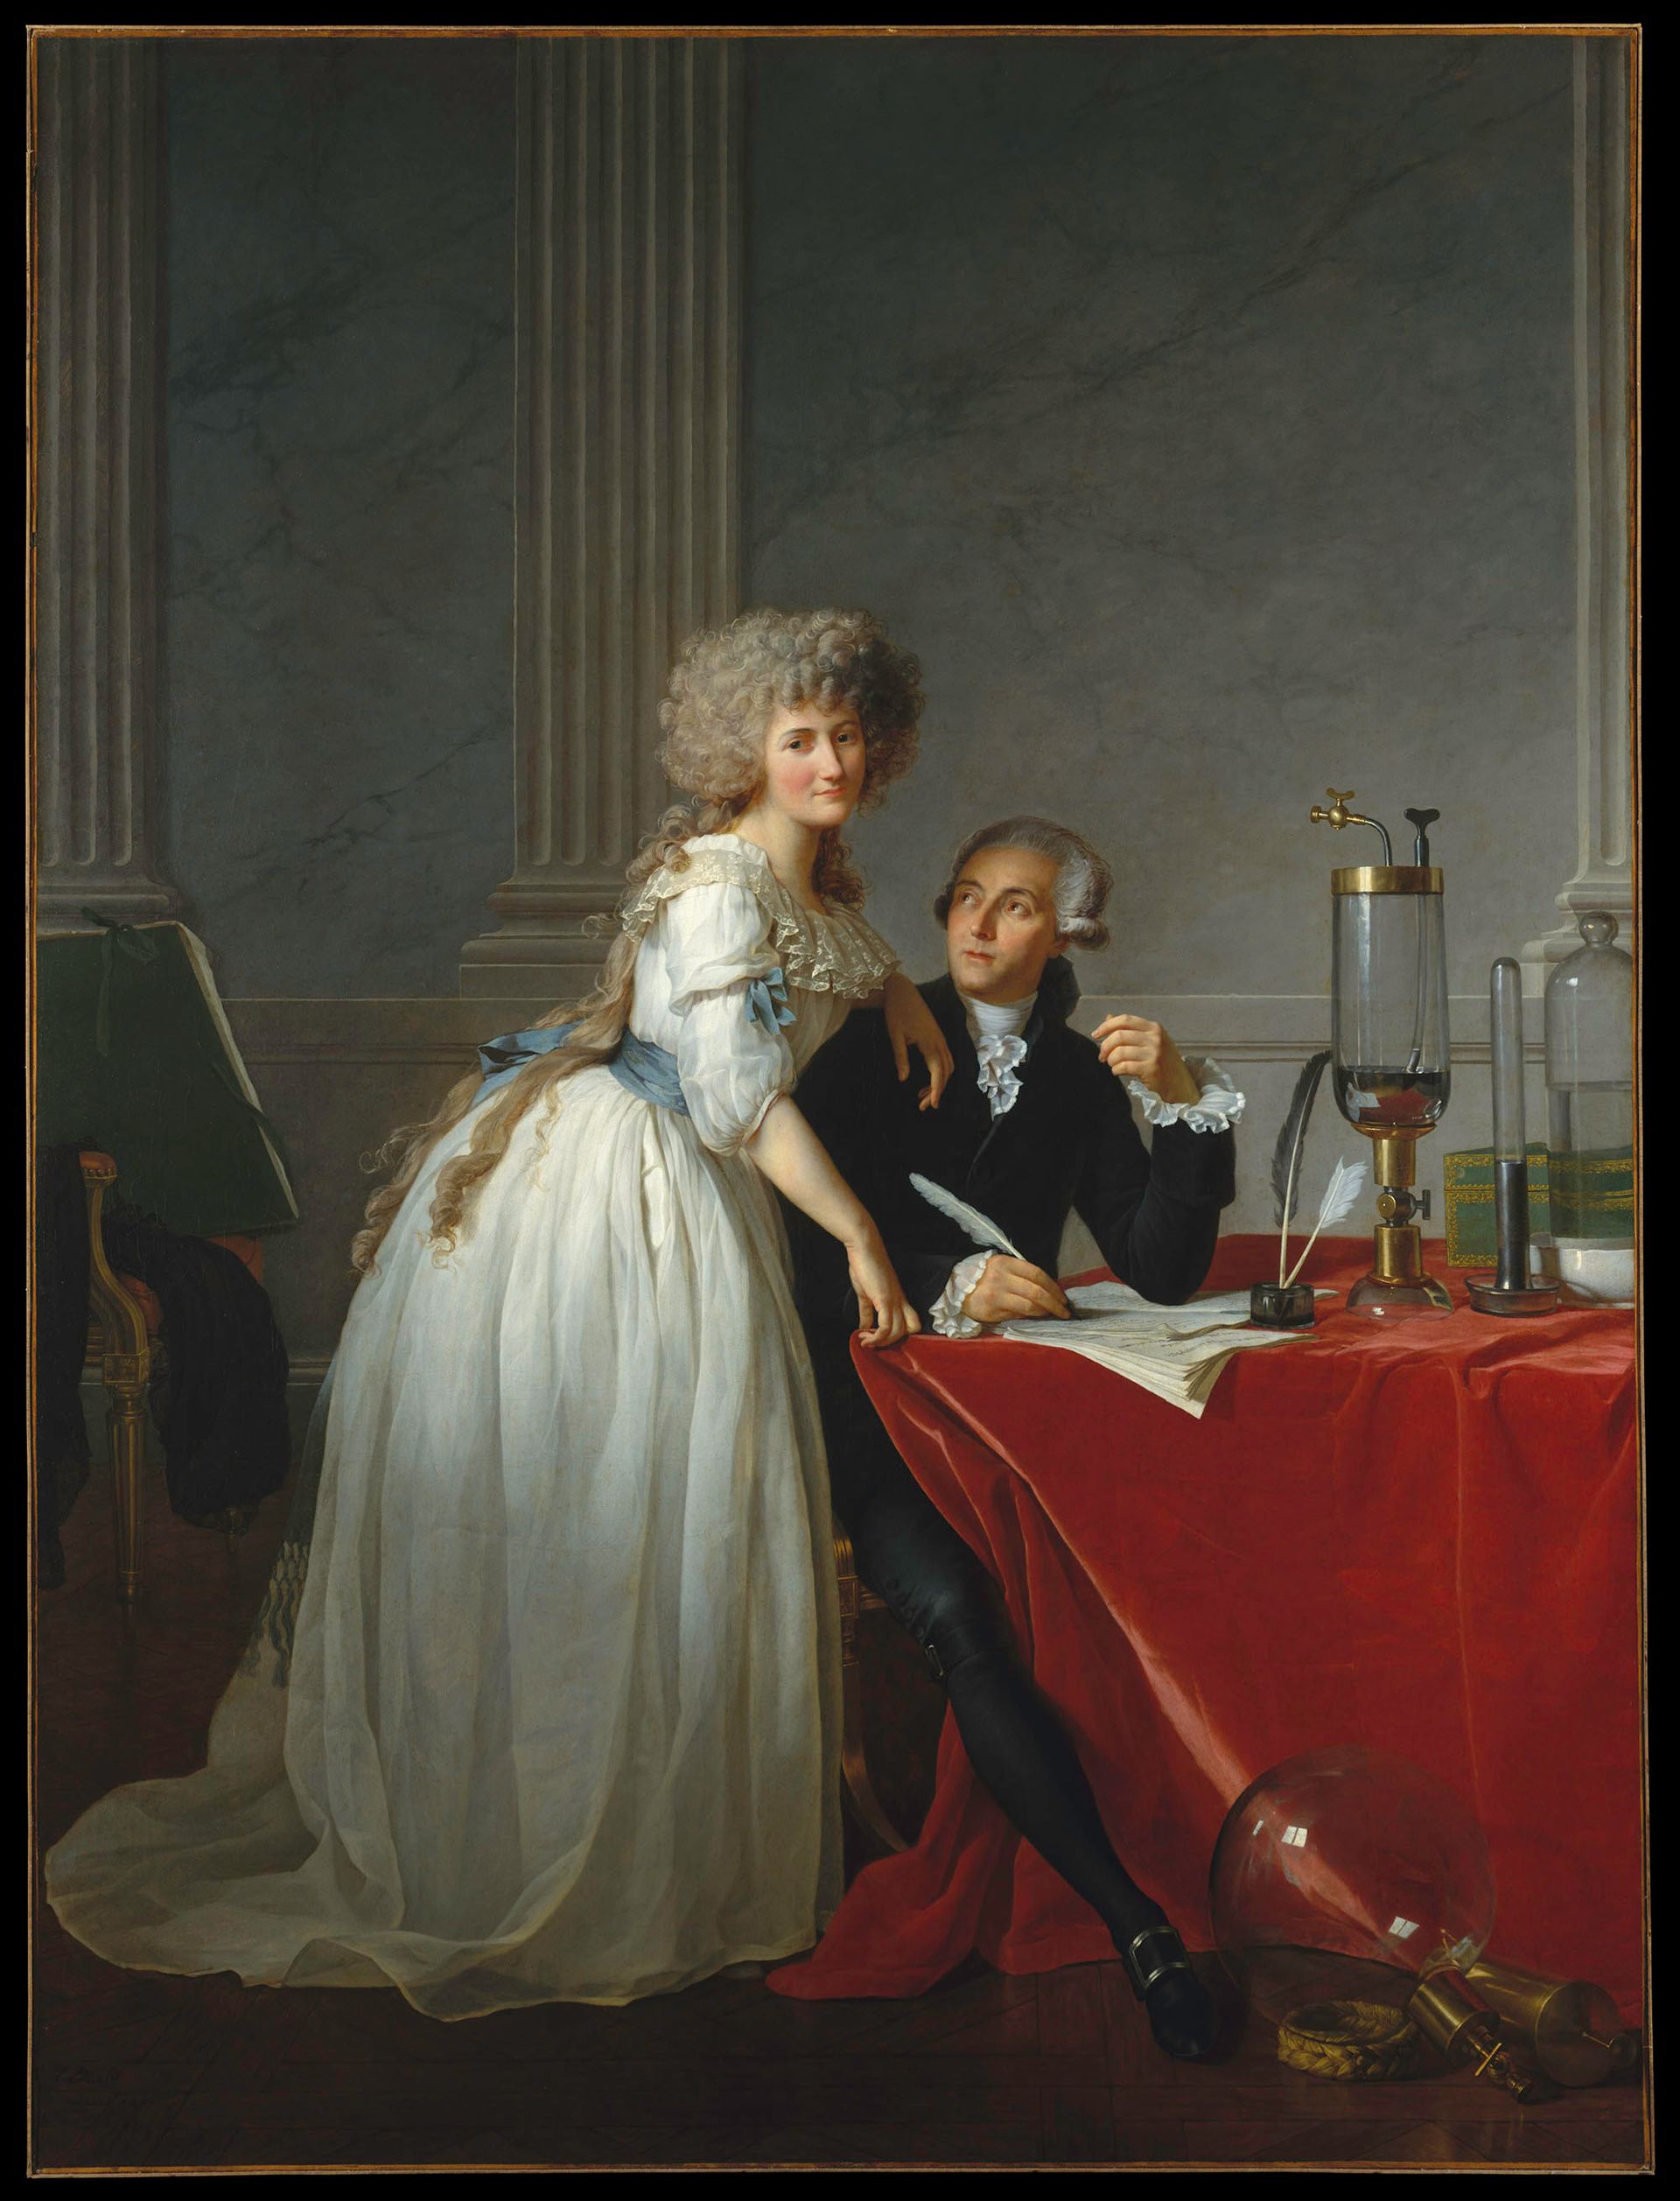 雅克-路易斯·大卫1788年的画作《安托万·洛朗·拉瓦锡(1743-1794)和玛丽·安妮·拉瓦锡(1758-1836)》，大都会艺术博物馆